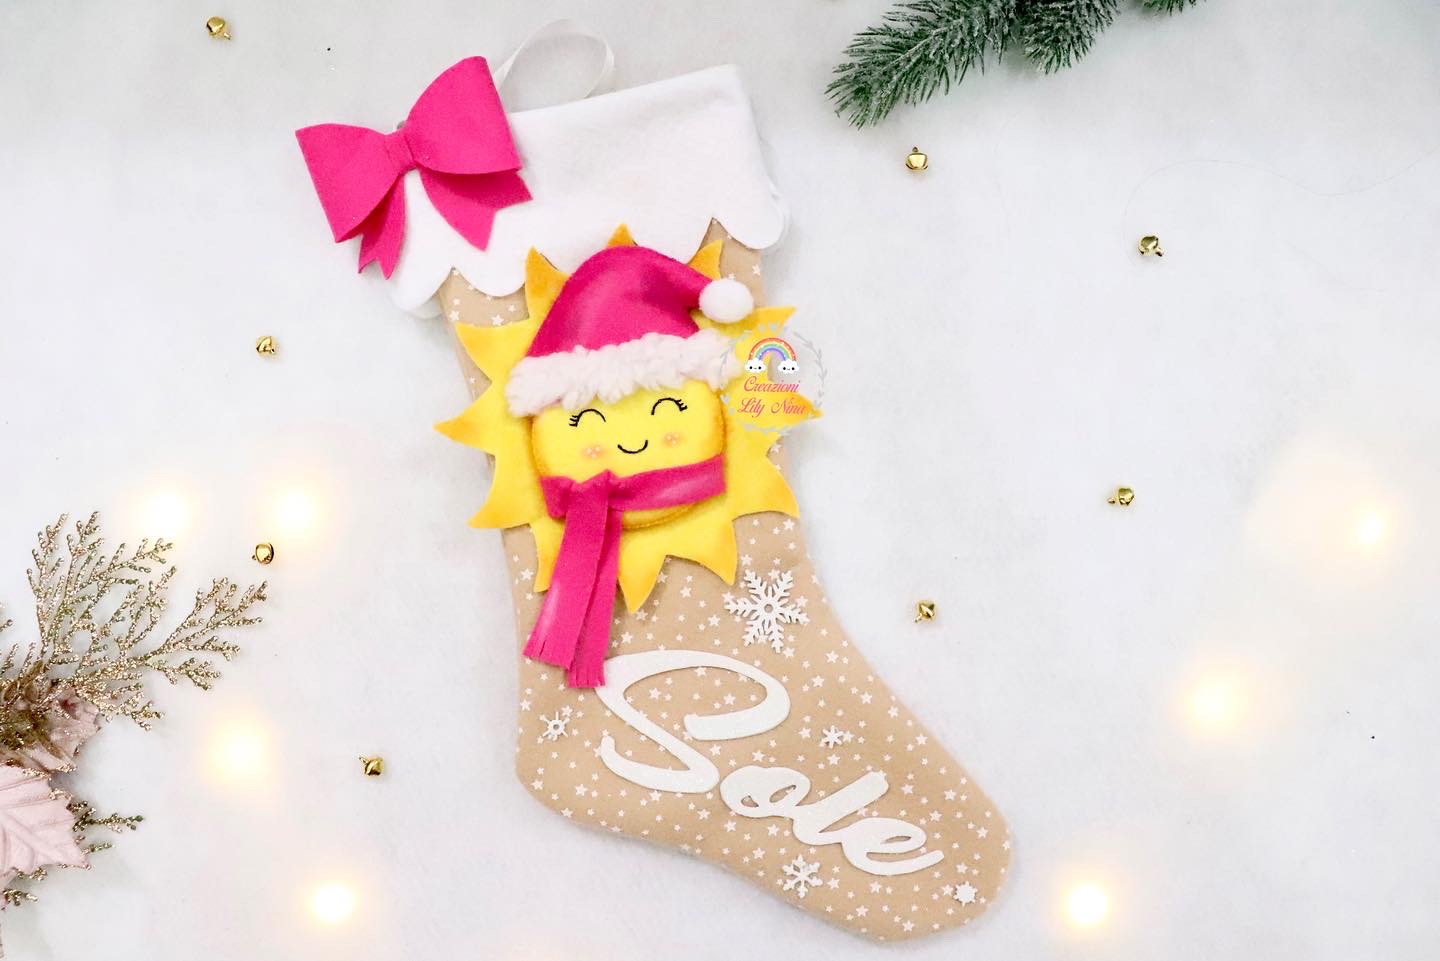 Calza Befana natalizia con il personaggio Sole personalizzato in feltro